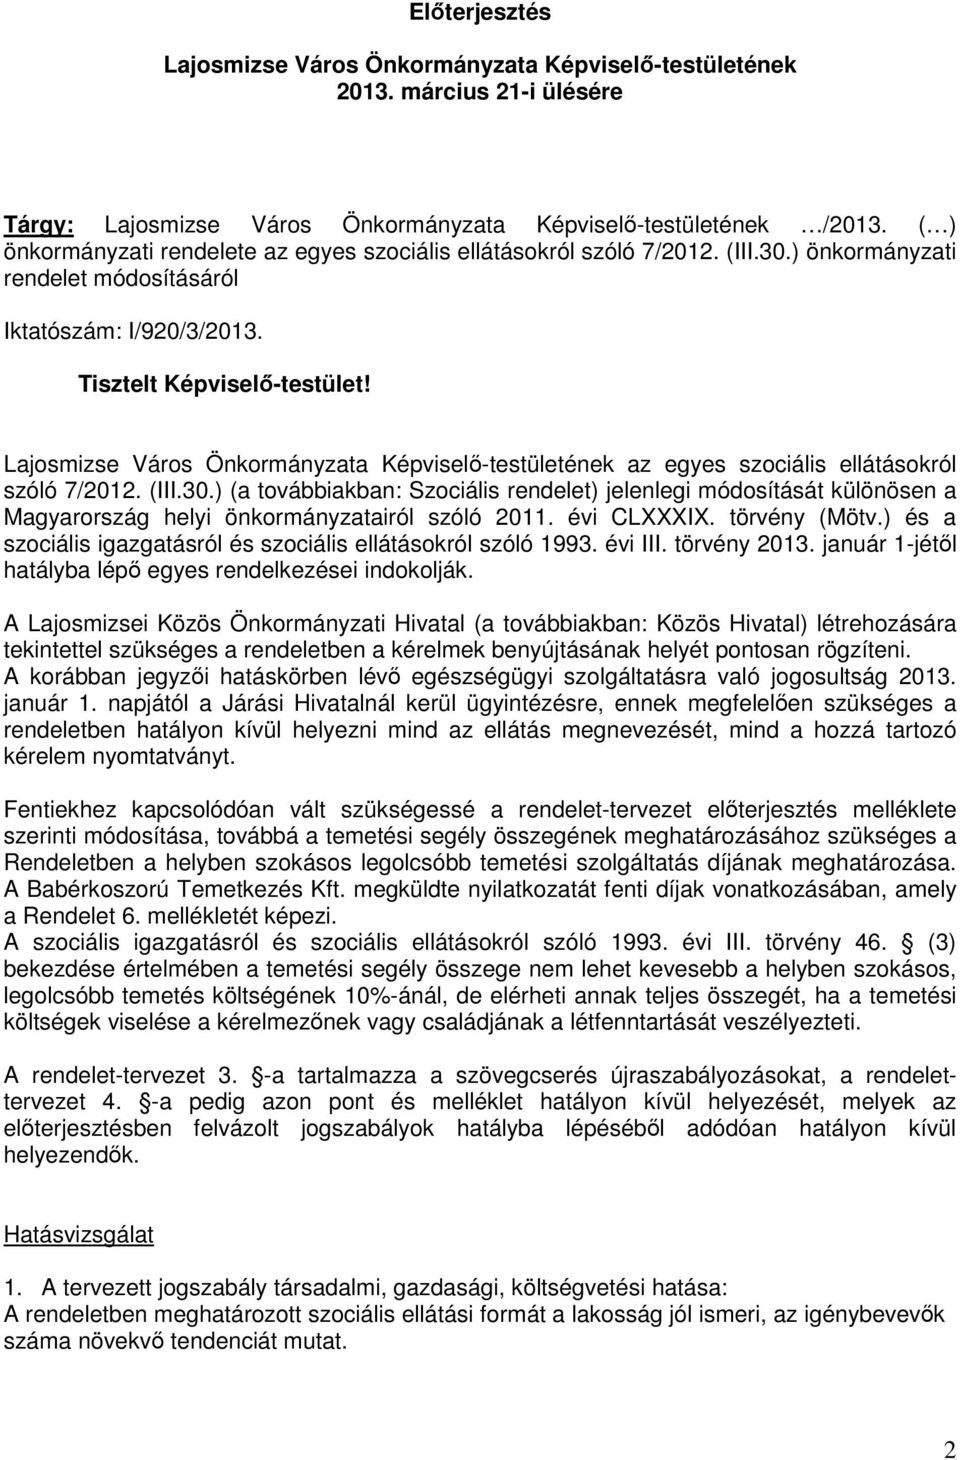 Lajosmizse Város Önkormányzata Képviselı-testületének az egyes szociális ellátásokról szóló 7/2012. (III.30.